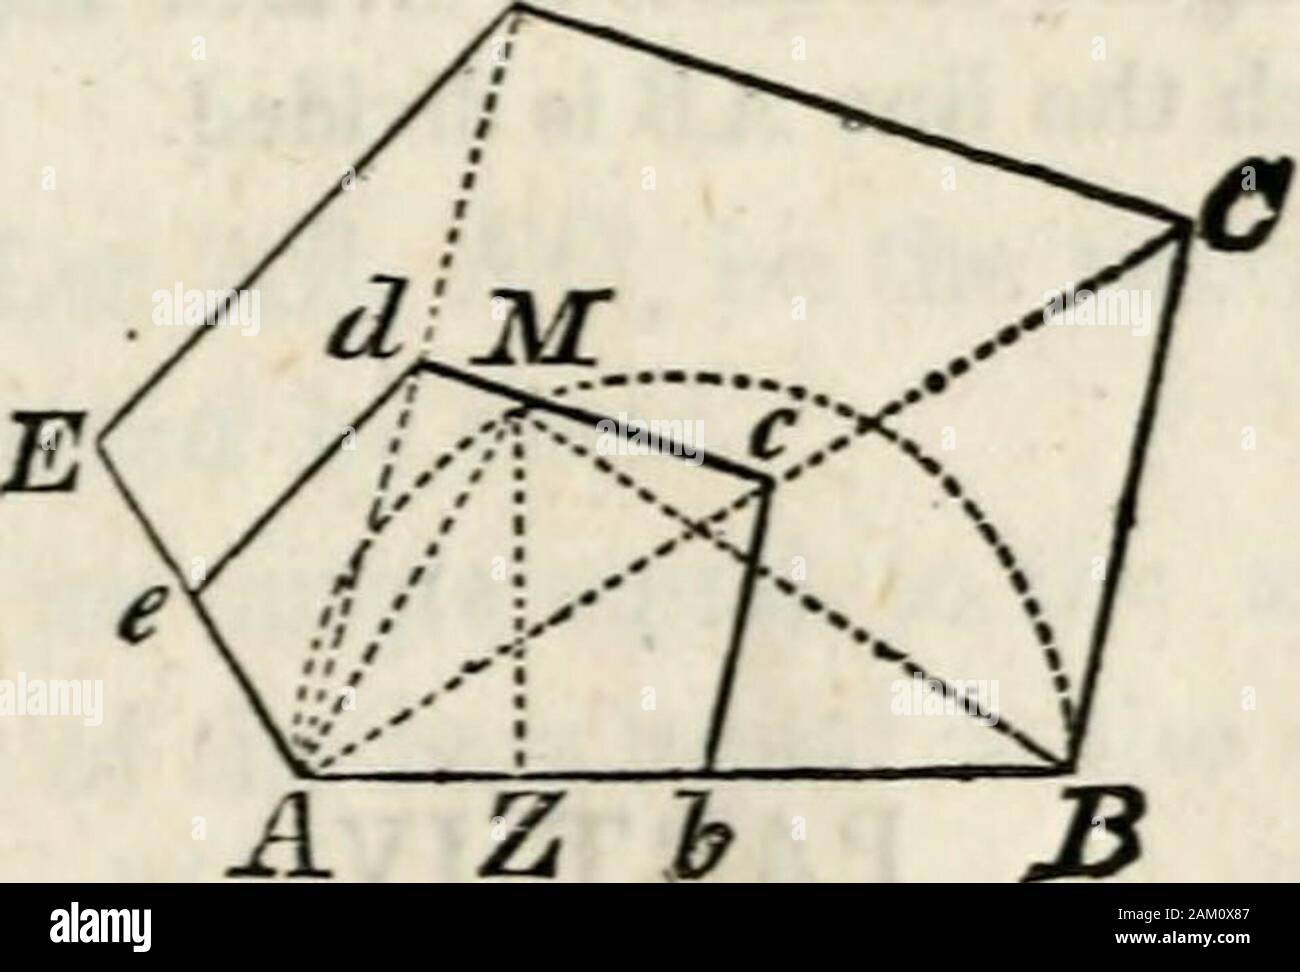 Eine elementare Abhandlung über Geometrie: für Anfänger vereinfachte nicht in der Algebra bewandert. le OPZ, weniger das Dreieck DCZ, ist das Dreieck DCZ, wie die hne BK, weniger die Linie der BG, ist der Une BG; das ist, trapezförmigen DOPC: Dreieck DCZ = GK: BG; und als GK (Bau 2) bis J des AG gleich, trapezförmigen DOPC: Dreieck DCZ=J AG: BG. In der Art und Weise, wie es kann nachgewiesen werden, dass Trapez DMNC: Dreieck DCZ = | AG: BG andtrapezoid DABC: Dreieck DCZ = AG: BG. Diese Anteile zum Ausdruck bringen, dass die drei Trapeze DOPC, DMNC, DABC, der Anderen im Verhältnis ein Drittel zu zwei Drittel auf thre Stockfoto